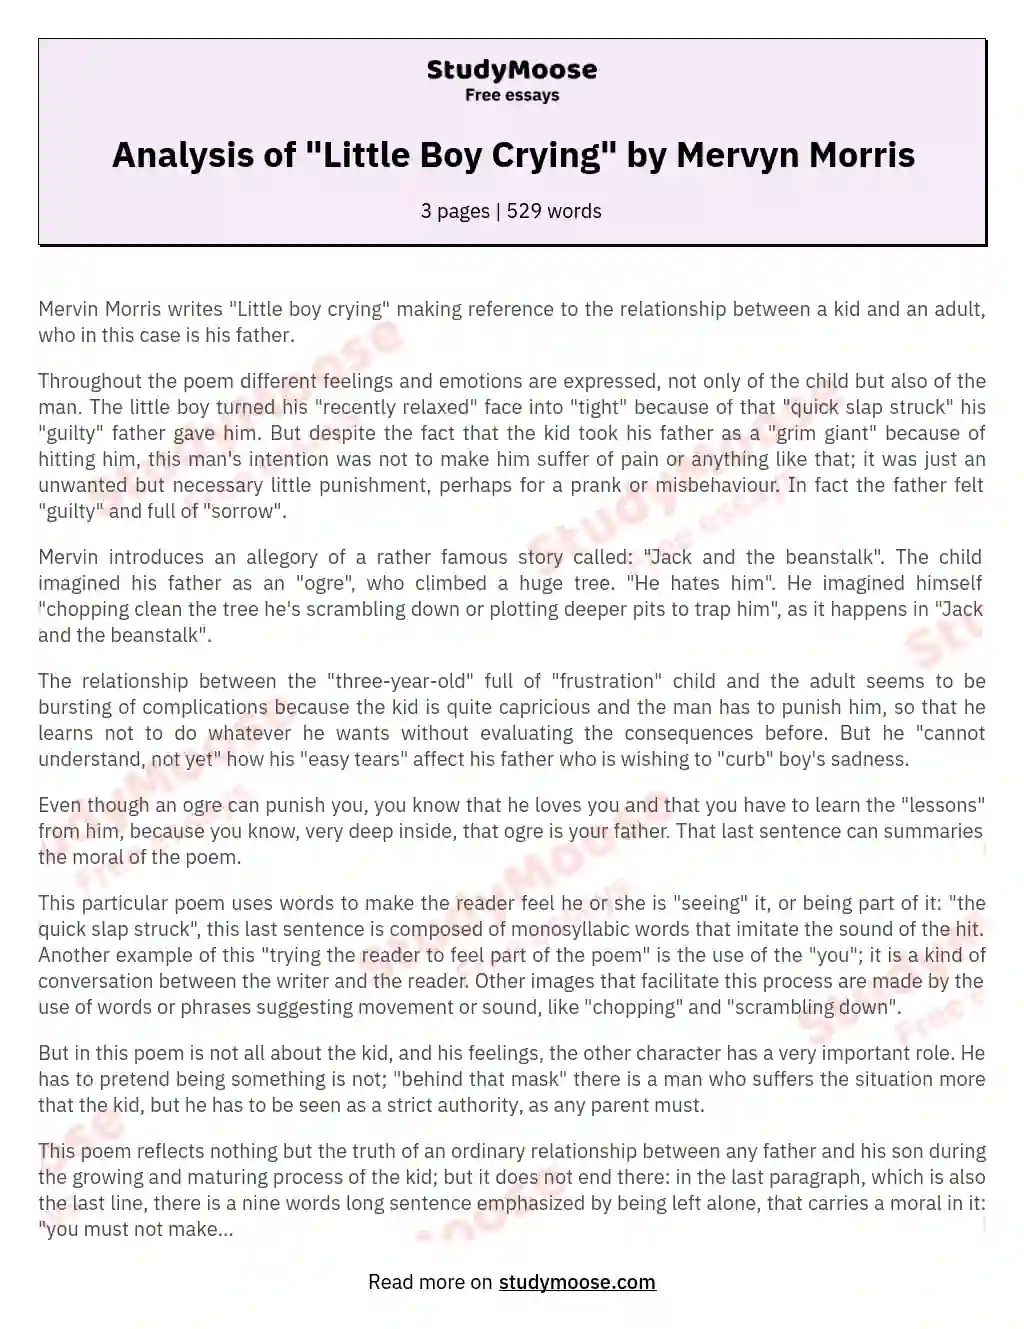 Analysis of "Little Boy Crying" by Mervyn Morris essay